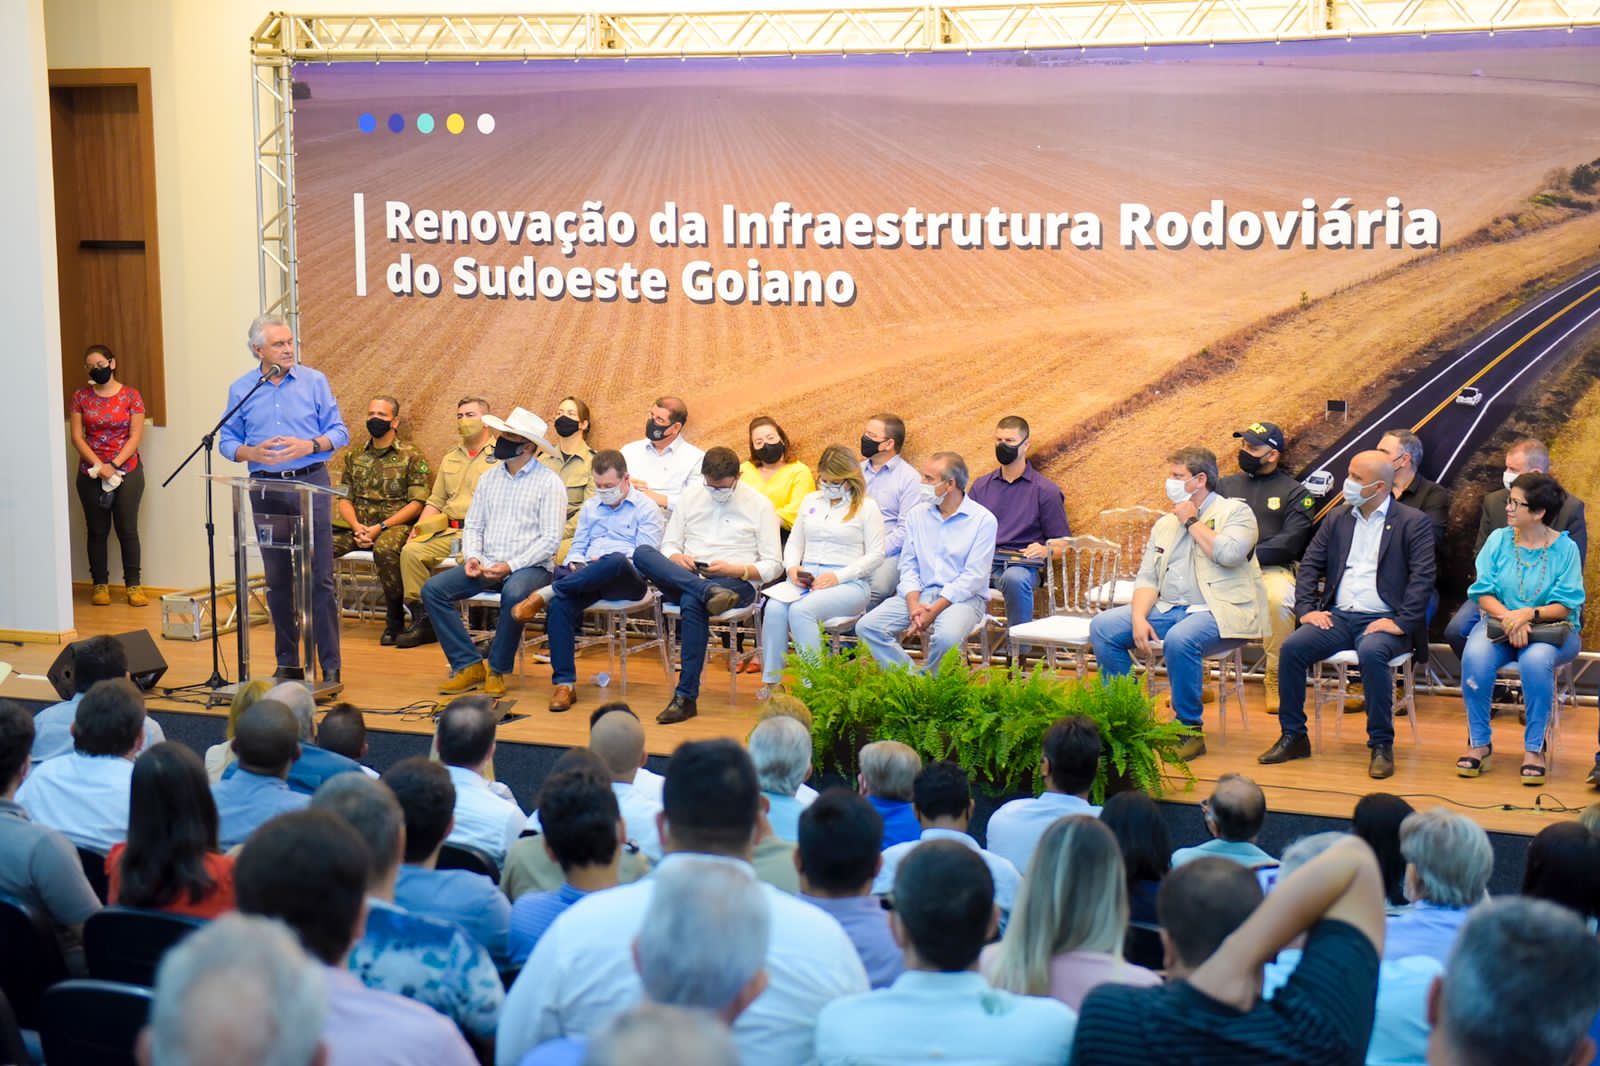 O governador Ronaldo Caiado, ao lado do ministro da infraestrutura, Tarcísio Gomes de Freitas, e líderanças em Jataí, durante lançamento de obras em rodovias federais do Sudoeste goiano